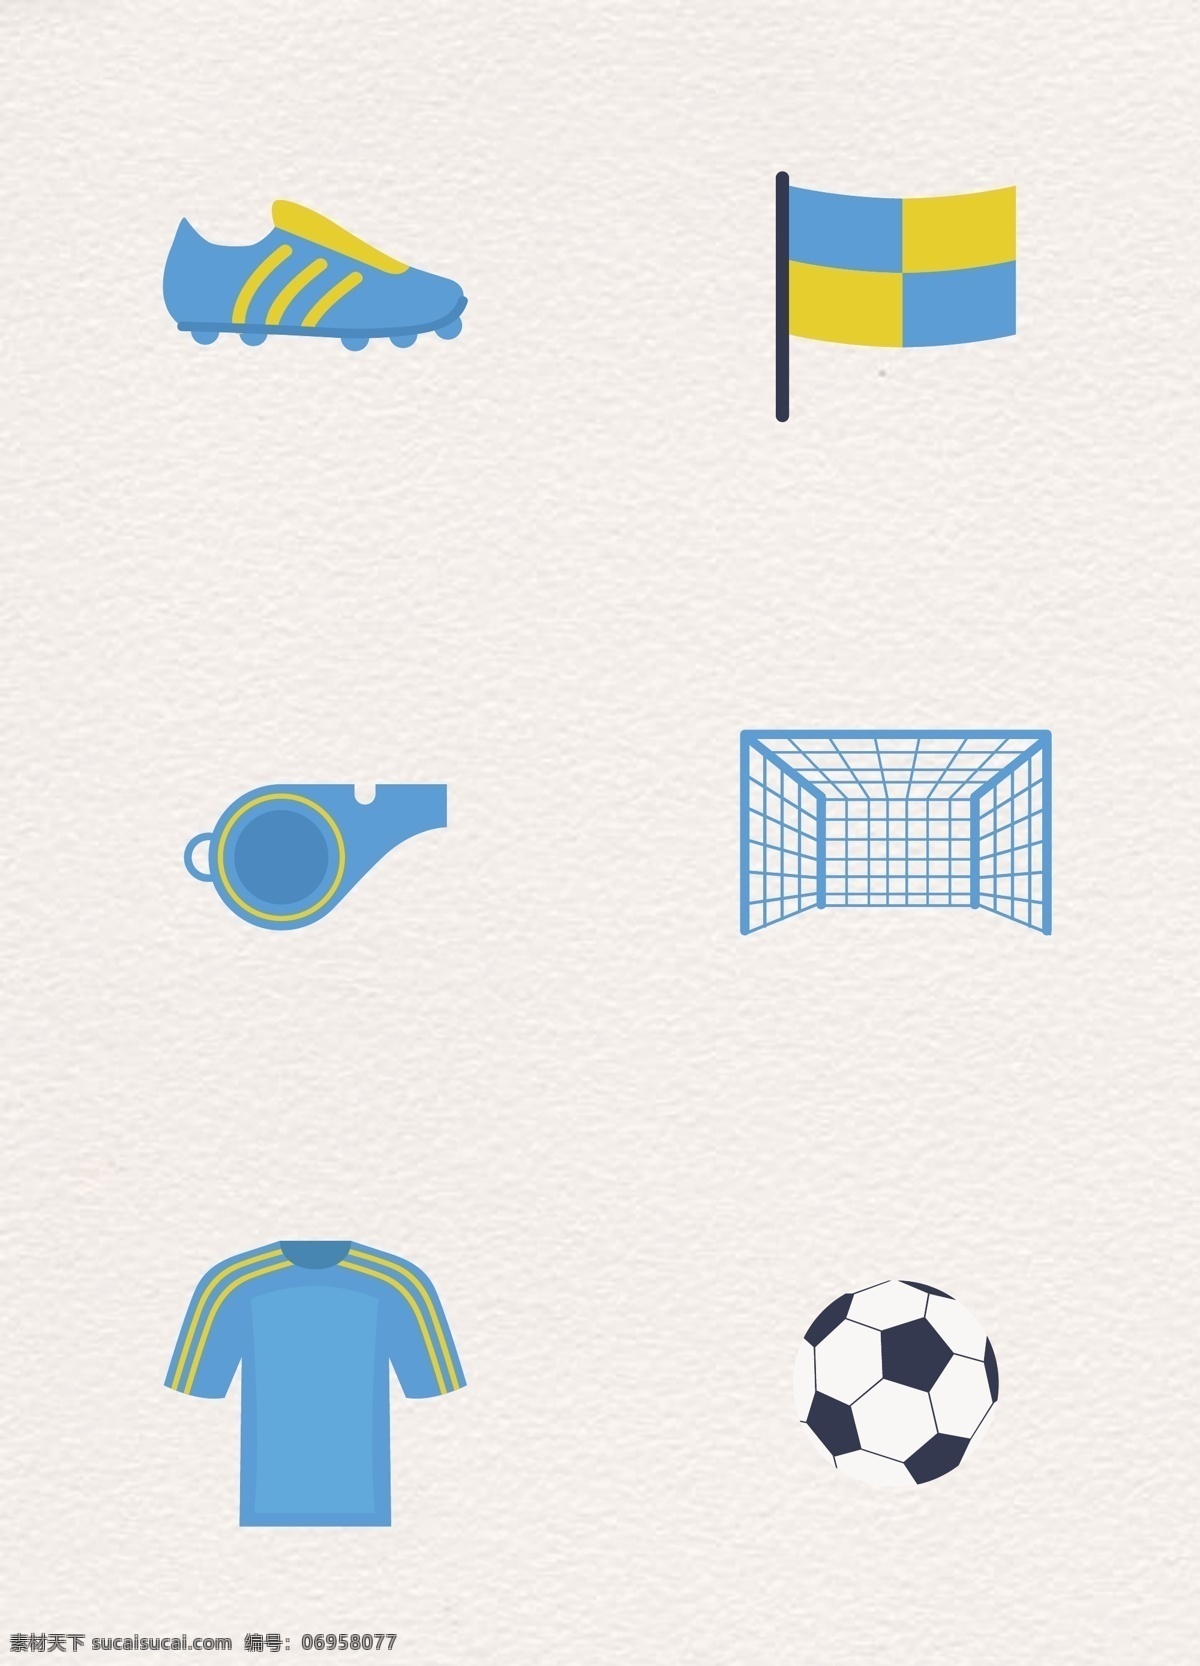 蓝色 系 扁平化 足球比赛 图标 卡通 旗子 足球 蓝色系 卡通足球素材 防滑鞋 哨子 球门 球衣 卡通足球